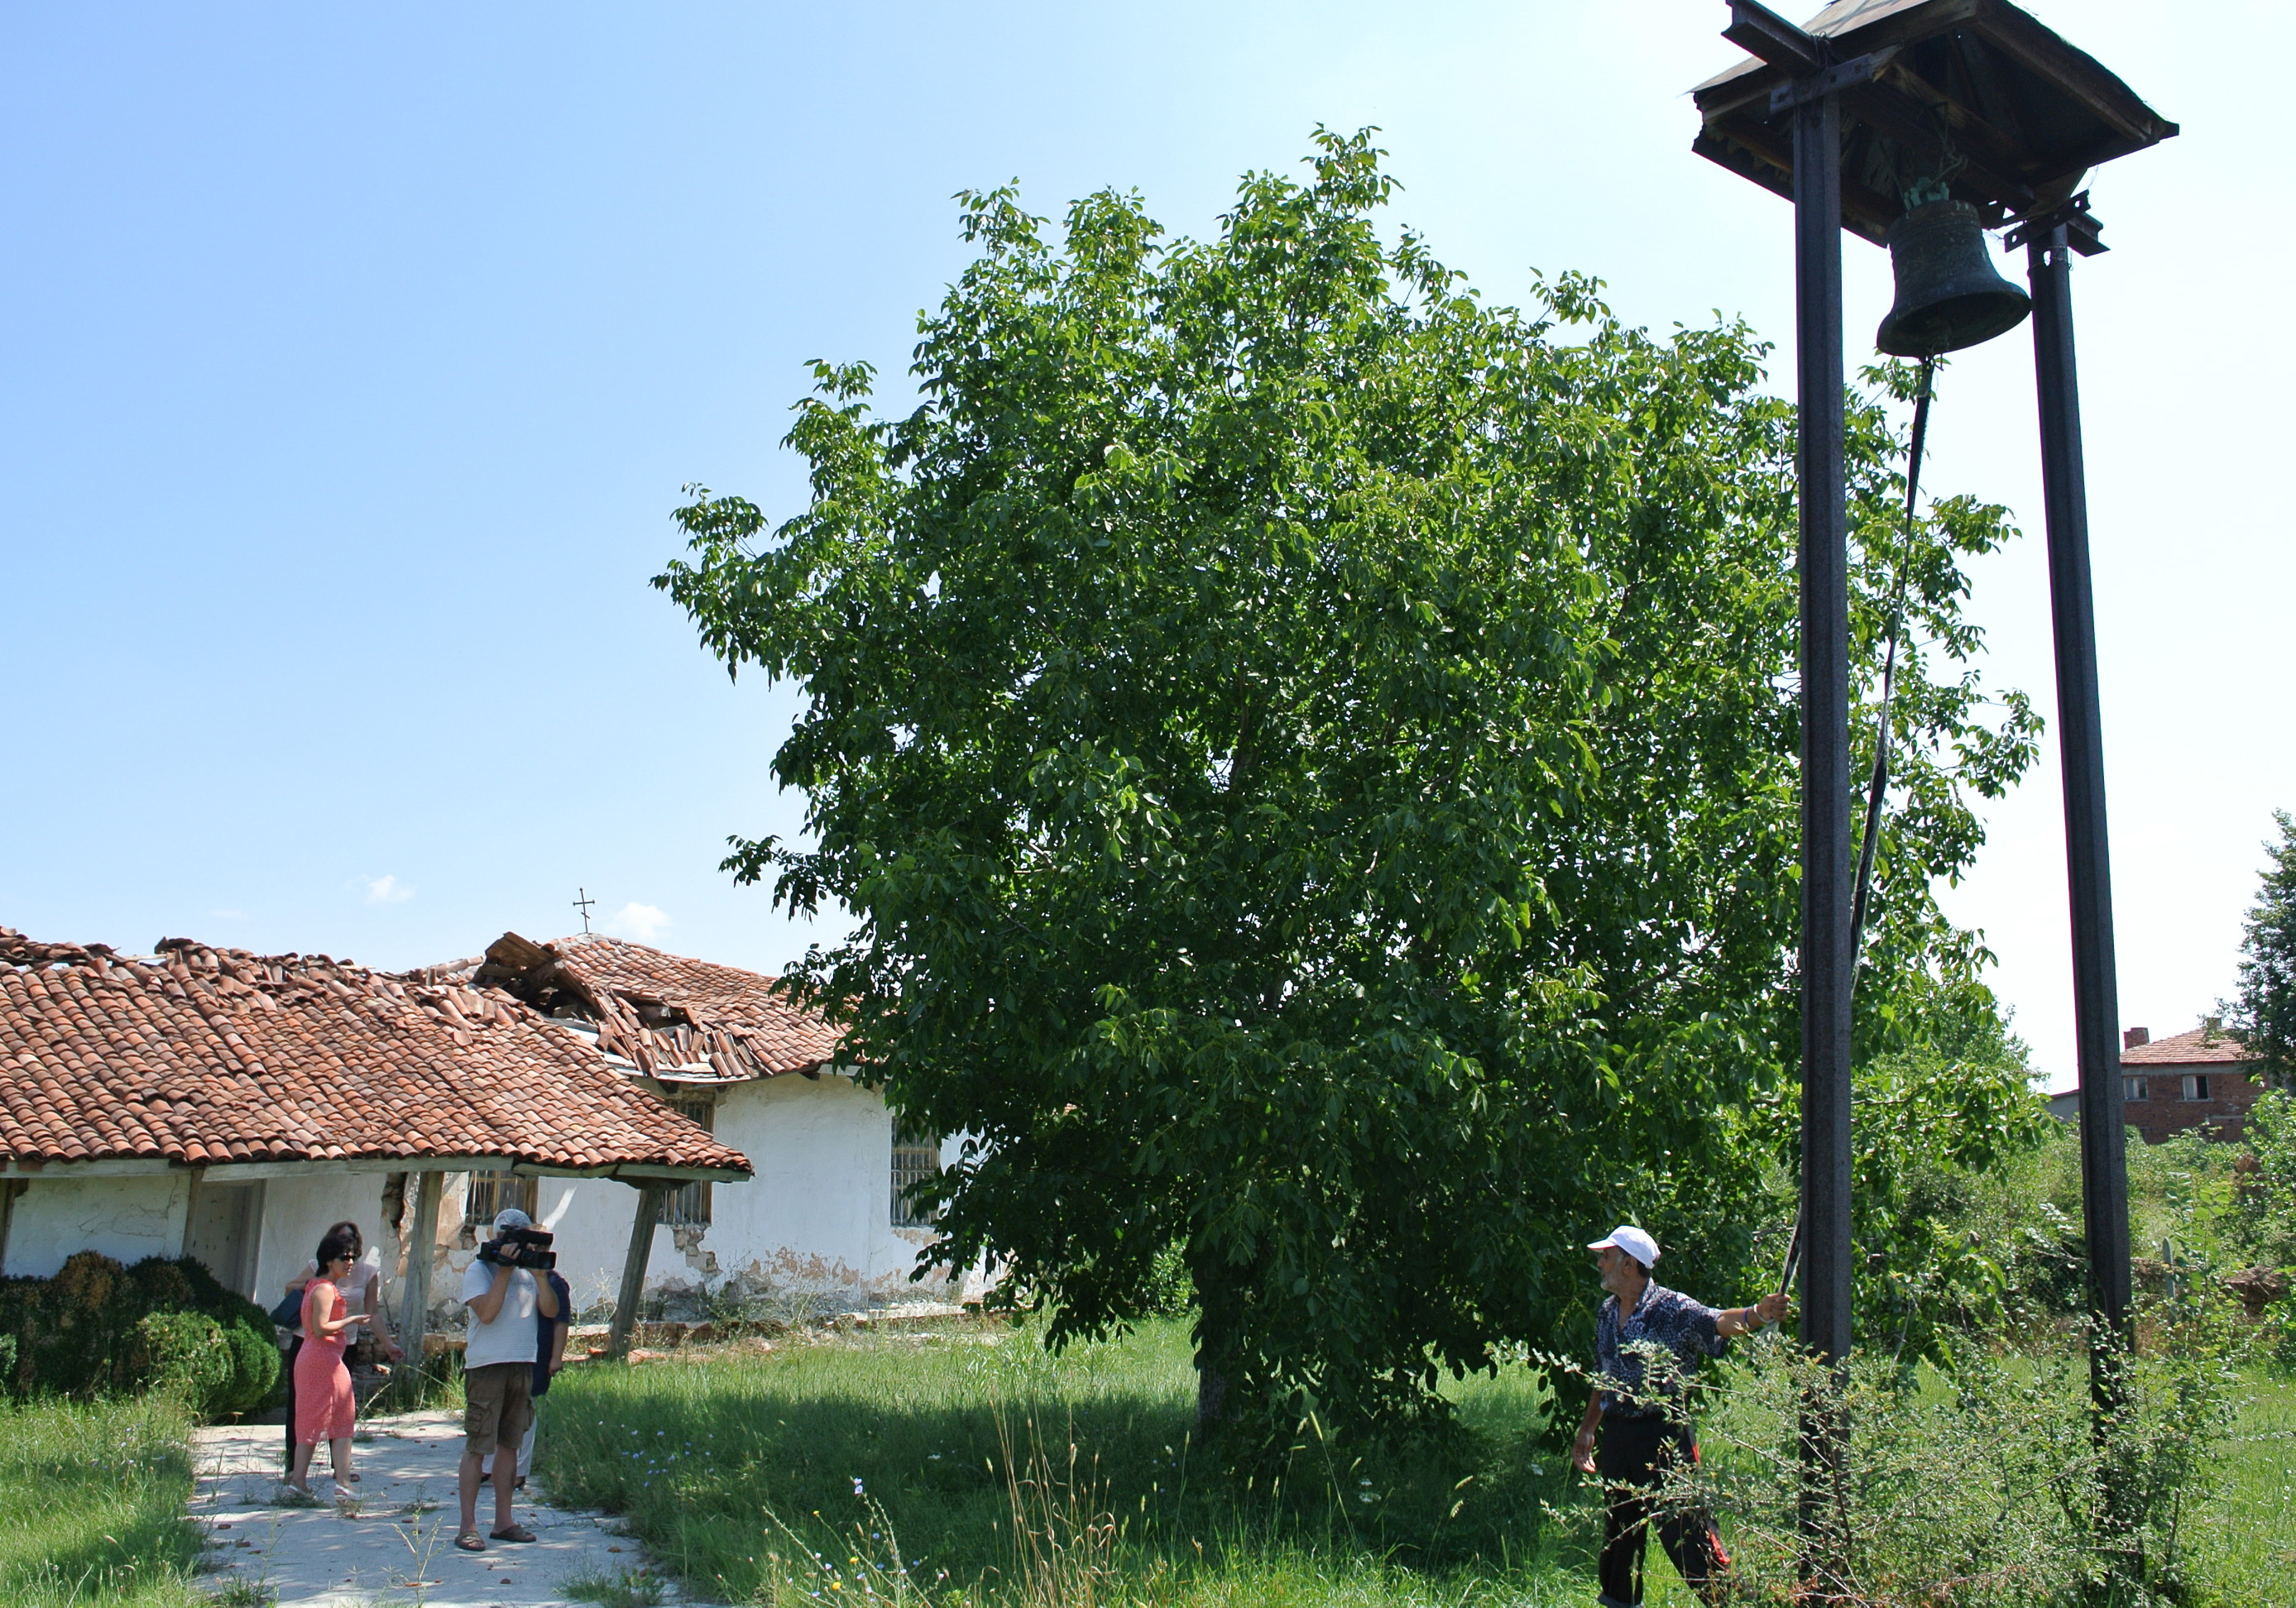 Възстановяват рухналата църква в Симеоновград